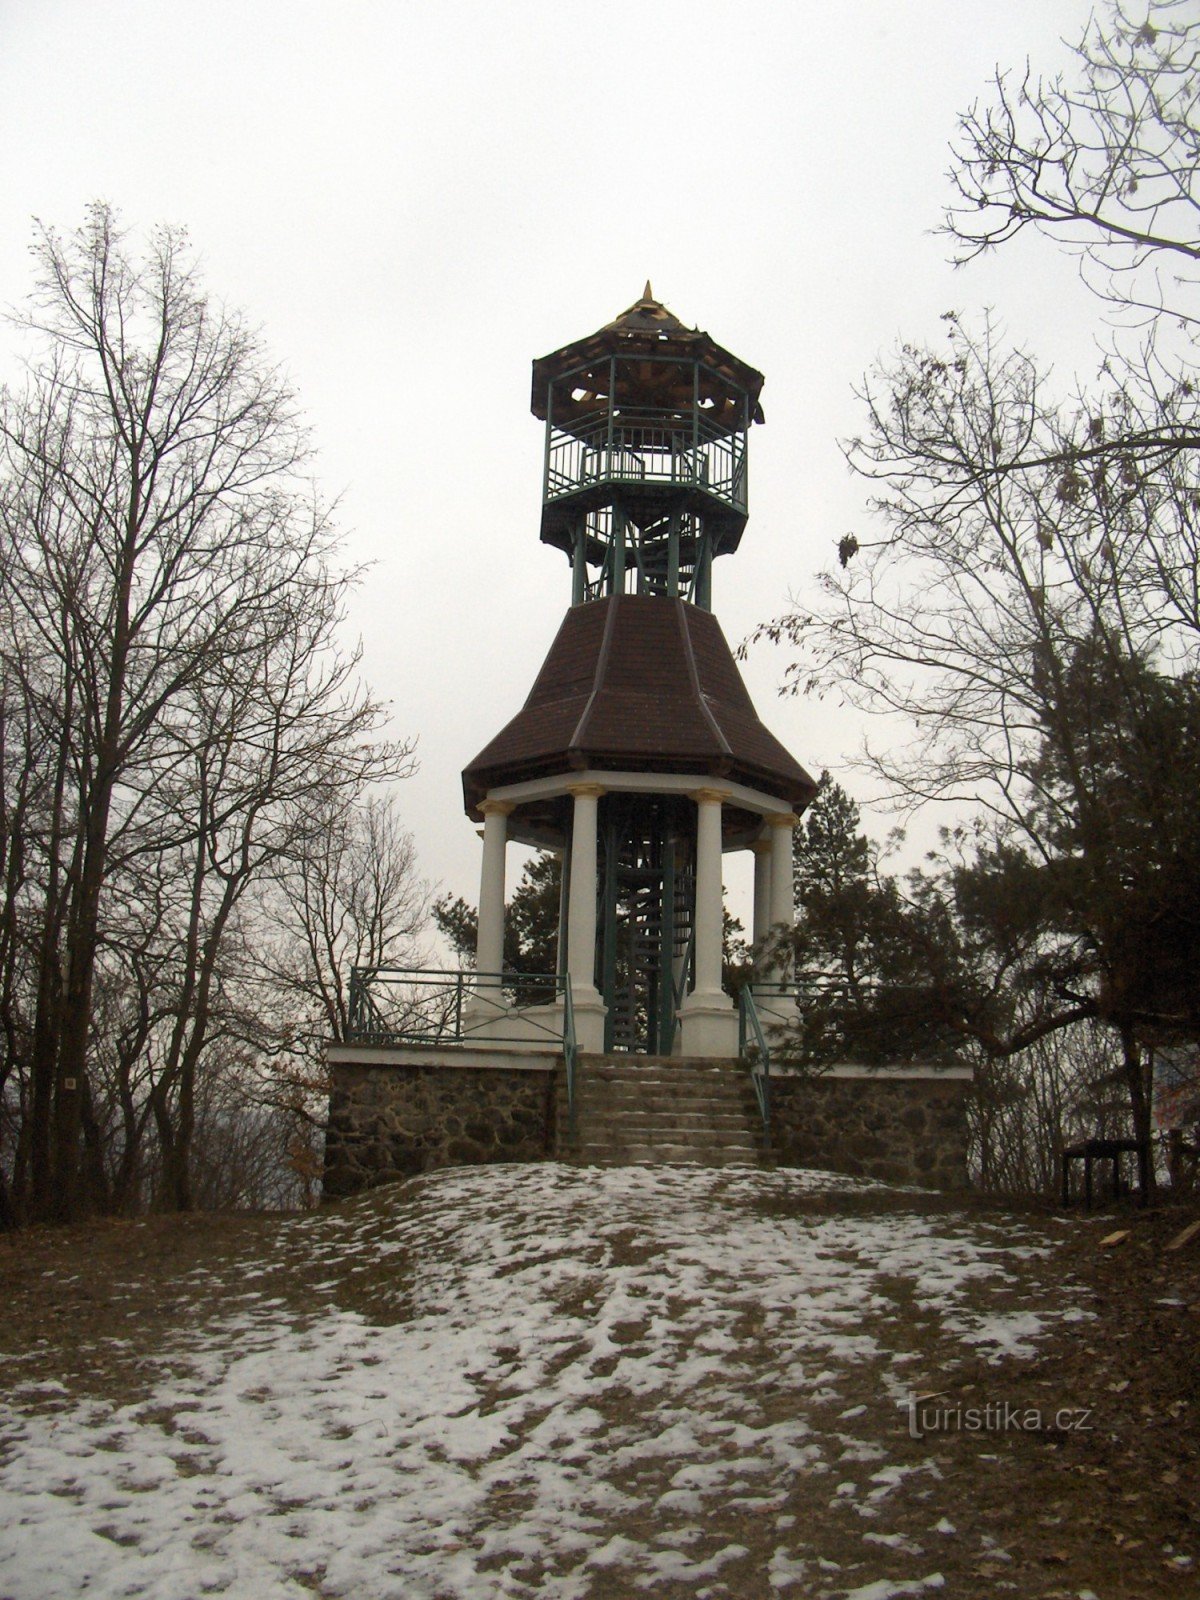 uitkijktoren op Svaté kopeček